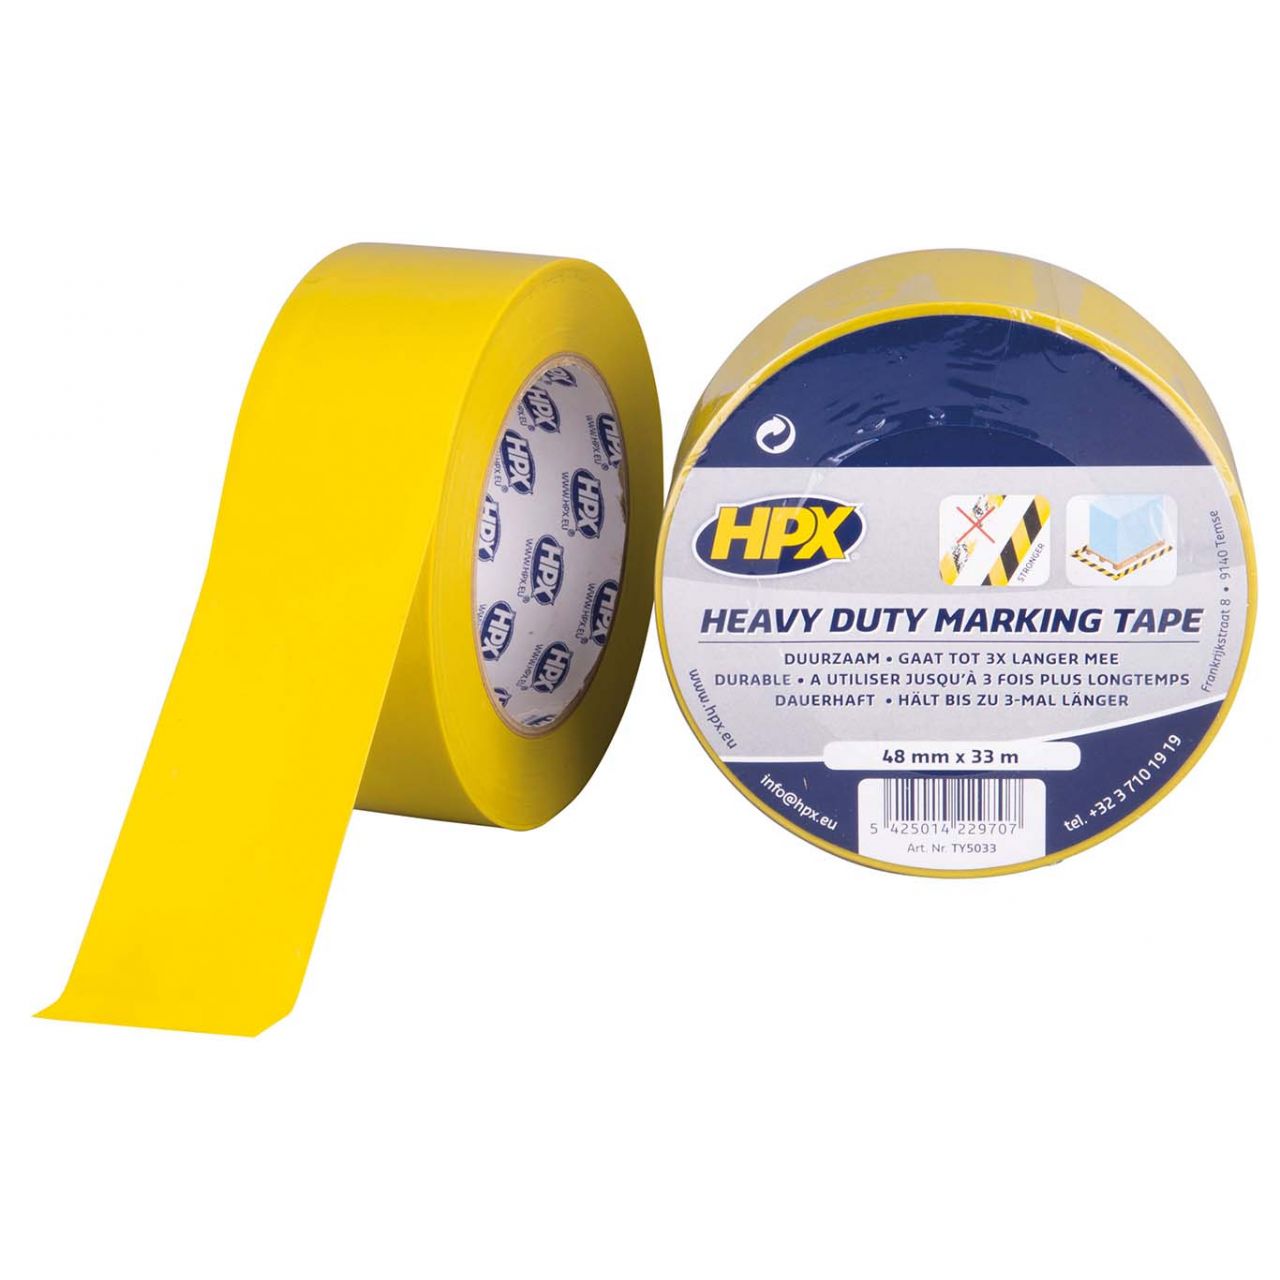 Cinta de marcaje Heavy Duty amarilla (48mm x 33m)